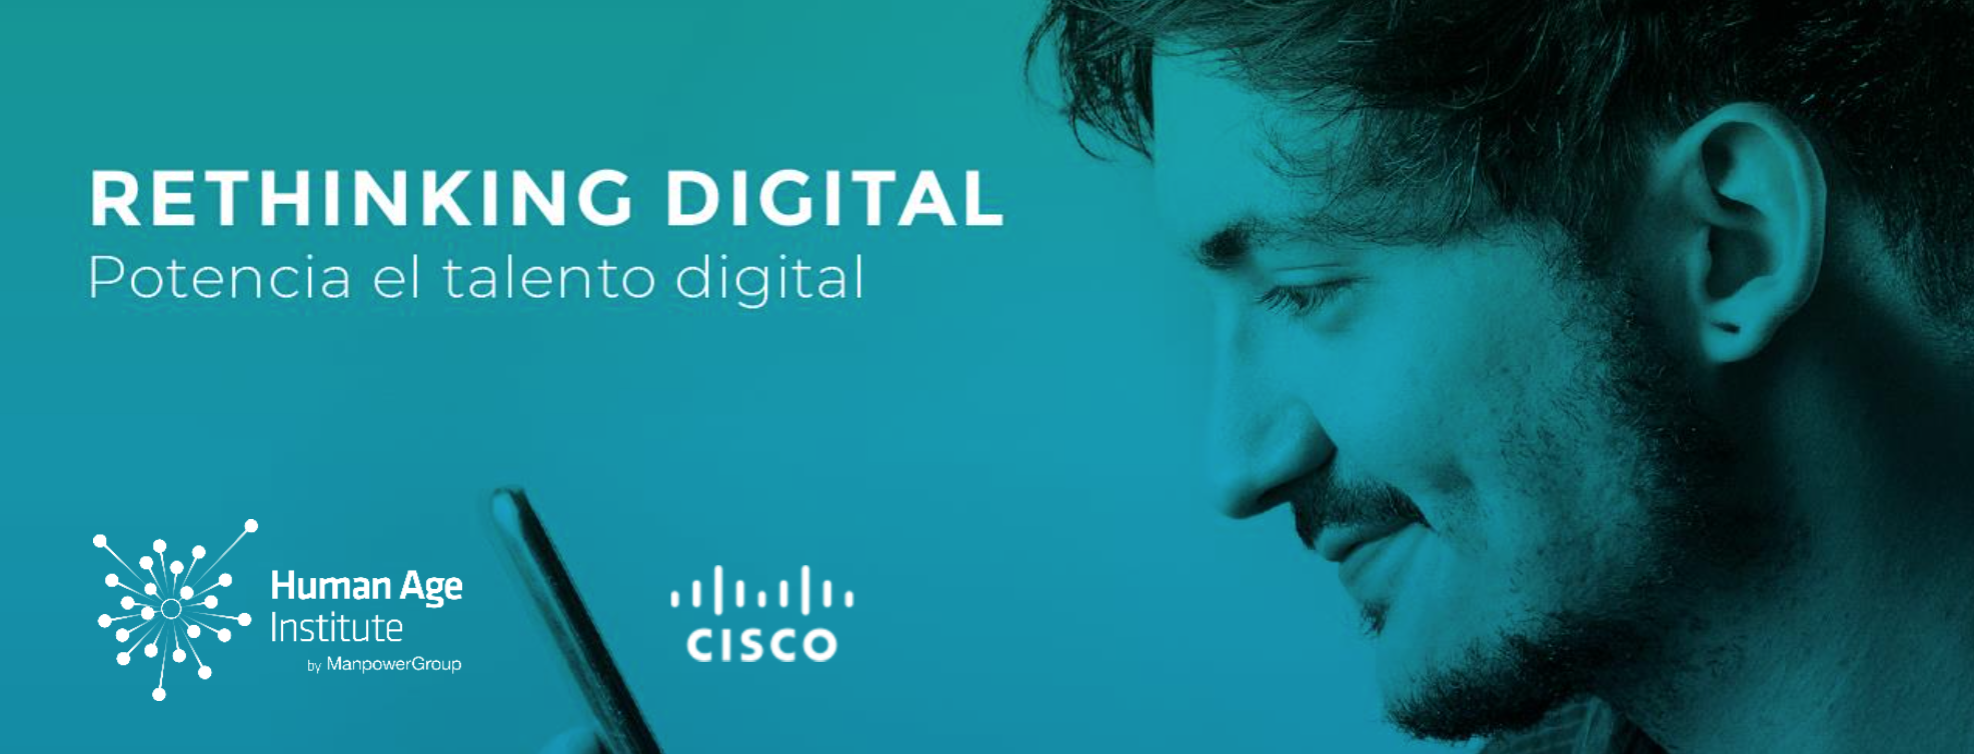 Cisco, DXC, Evolutio y Sacyr potencian el talento digital en Rethinking  Digital | Human Age Institute